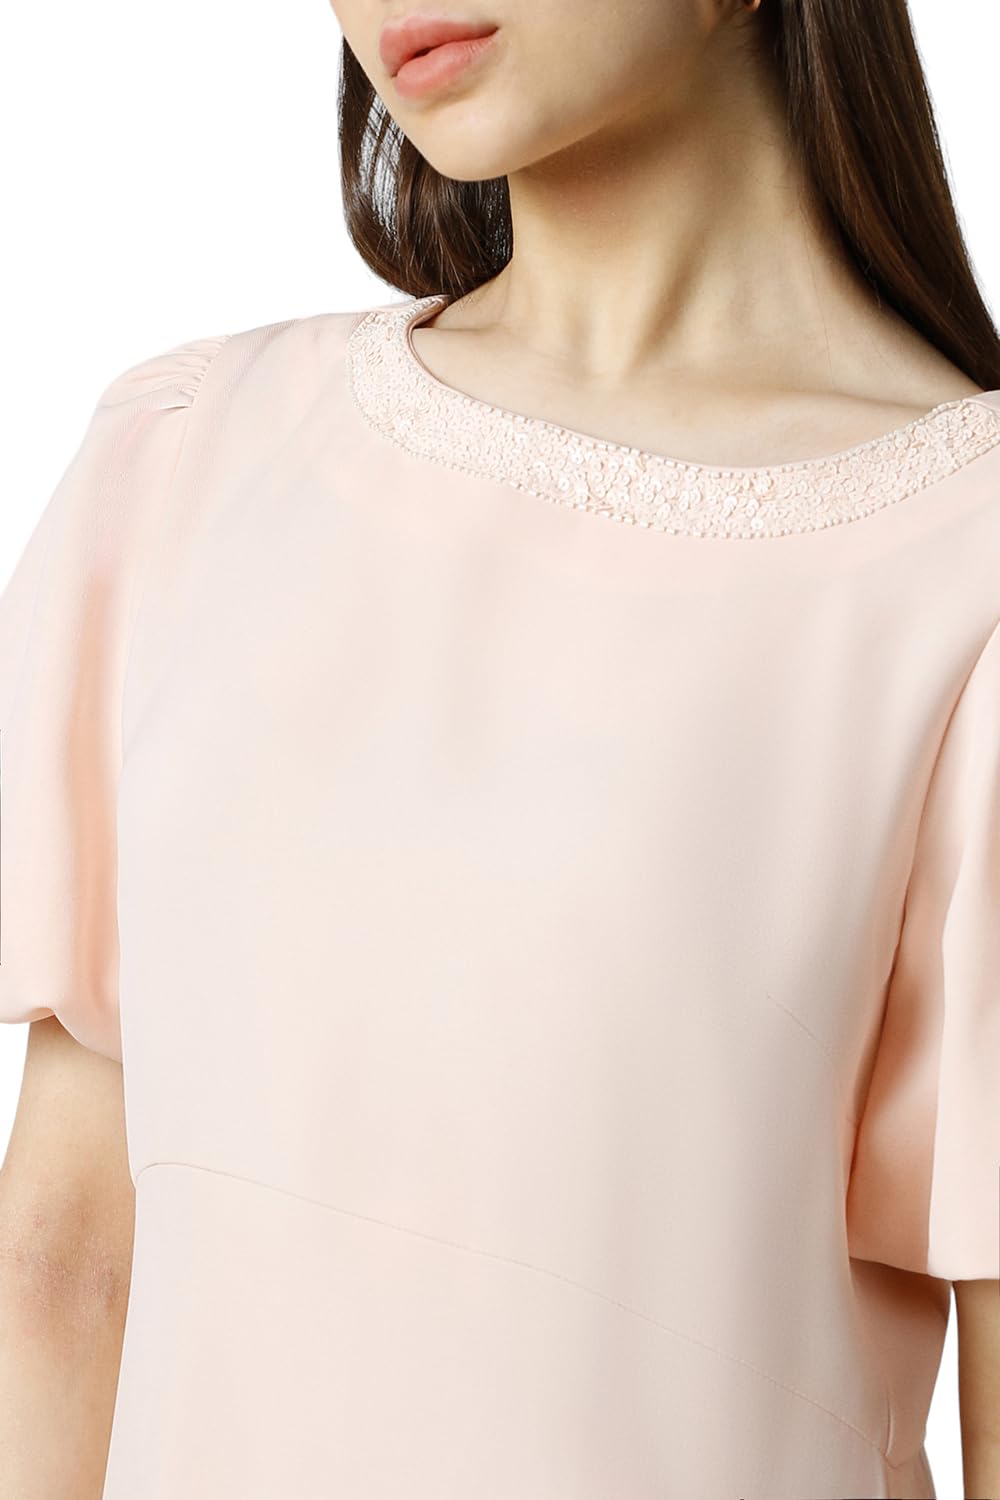 Van Heusen Women's Polyester Asymmetrical Mid-Thigh Length Dress (VWDRERGFC66097_Pink